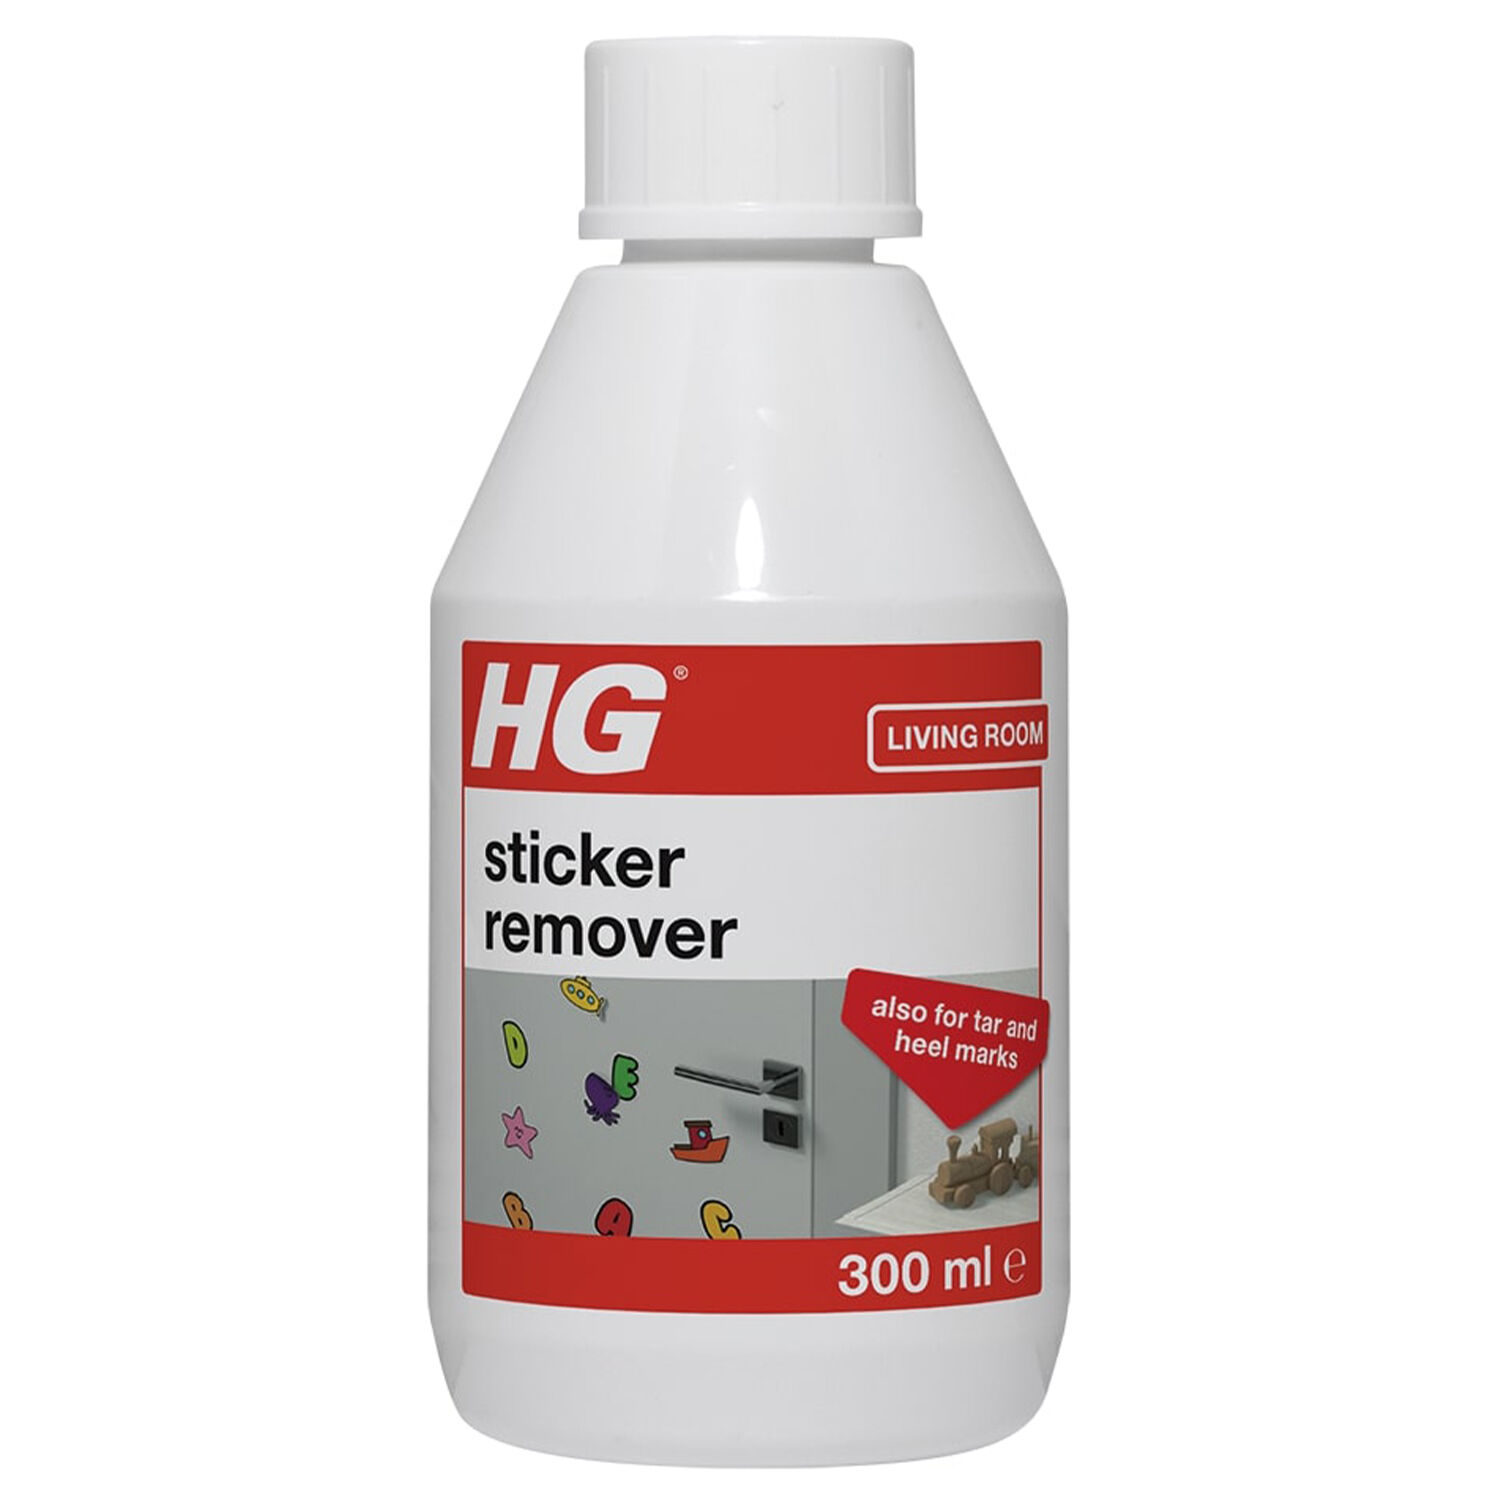 HG Sticker Remover 300ml - Home Store + More